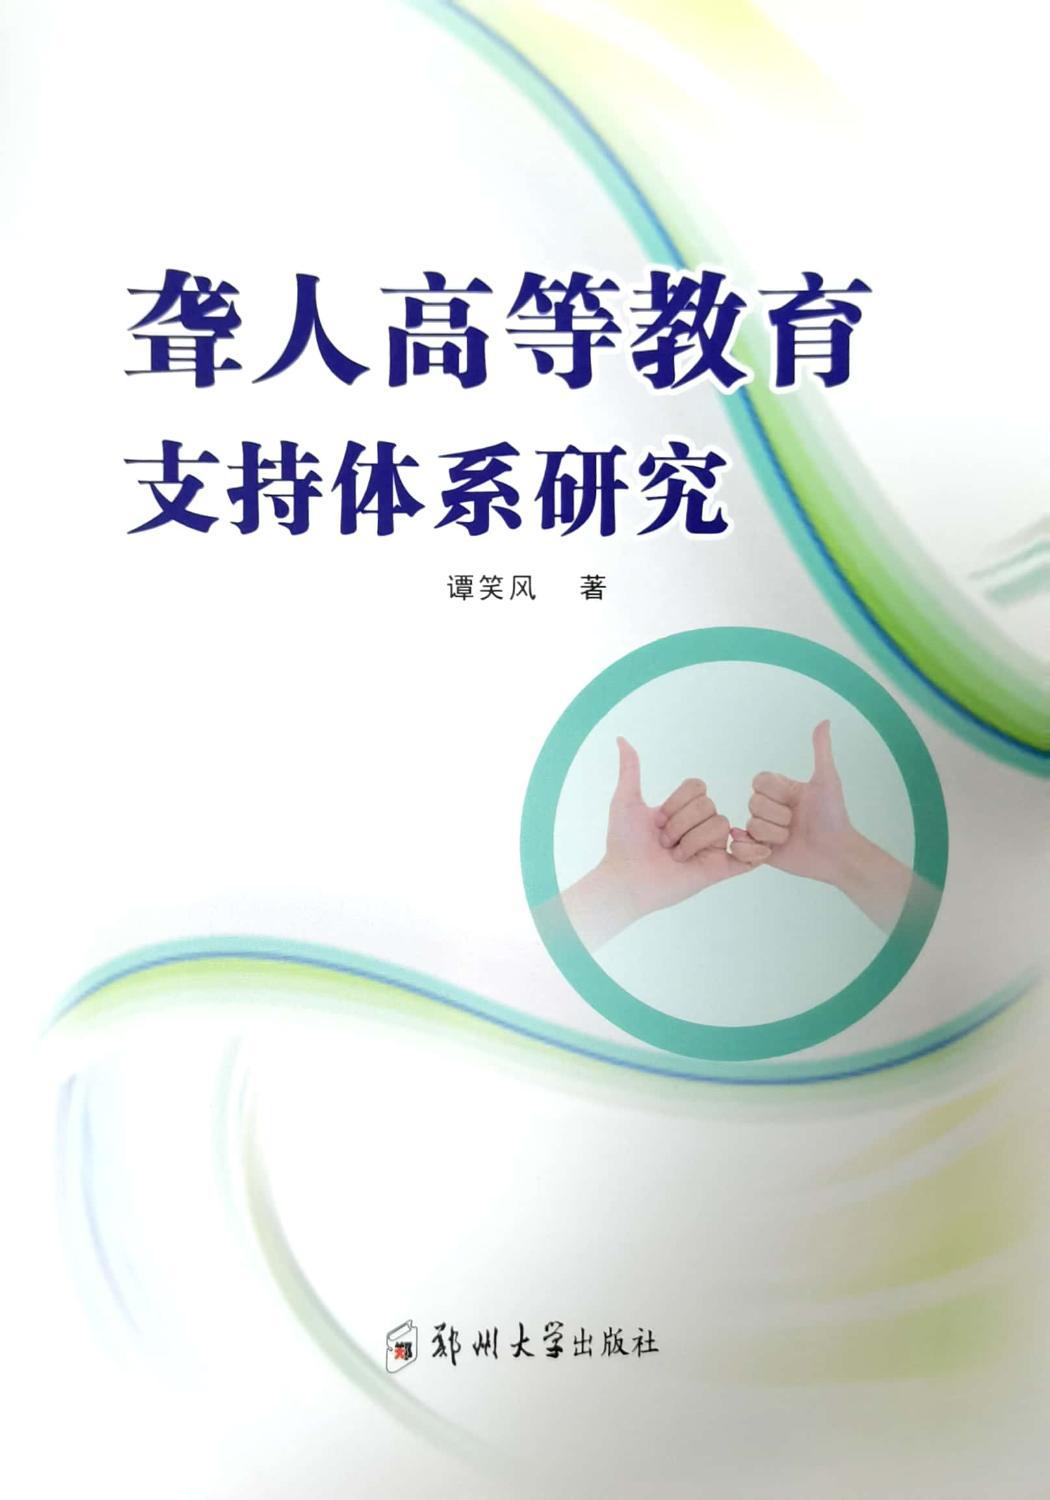 正版 聋人高等教育支持体系研究 谭笑风著 郑州大学出版社 9787564585532 可开票